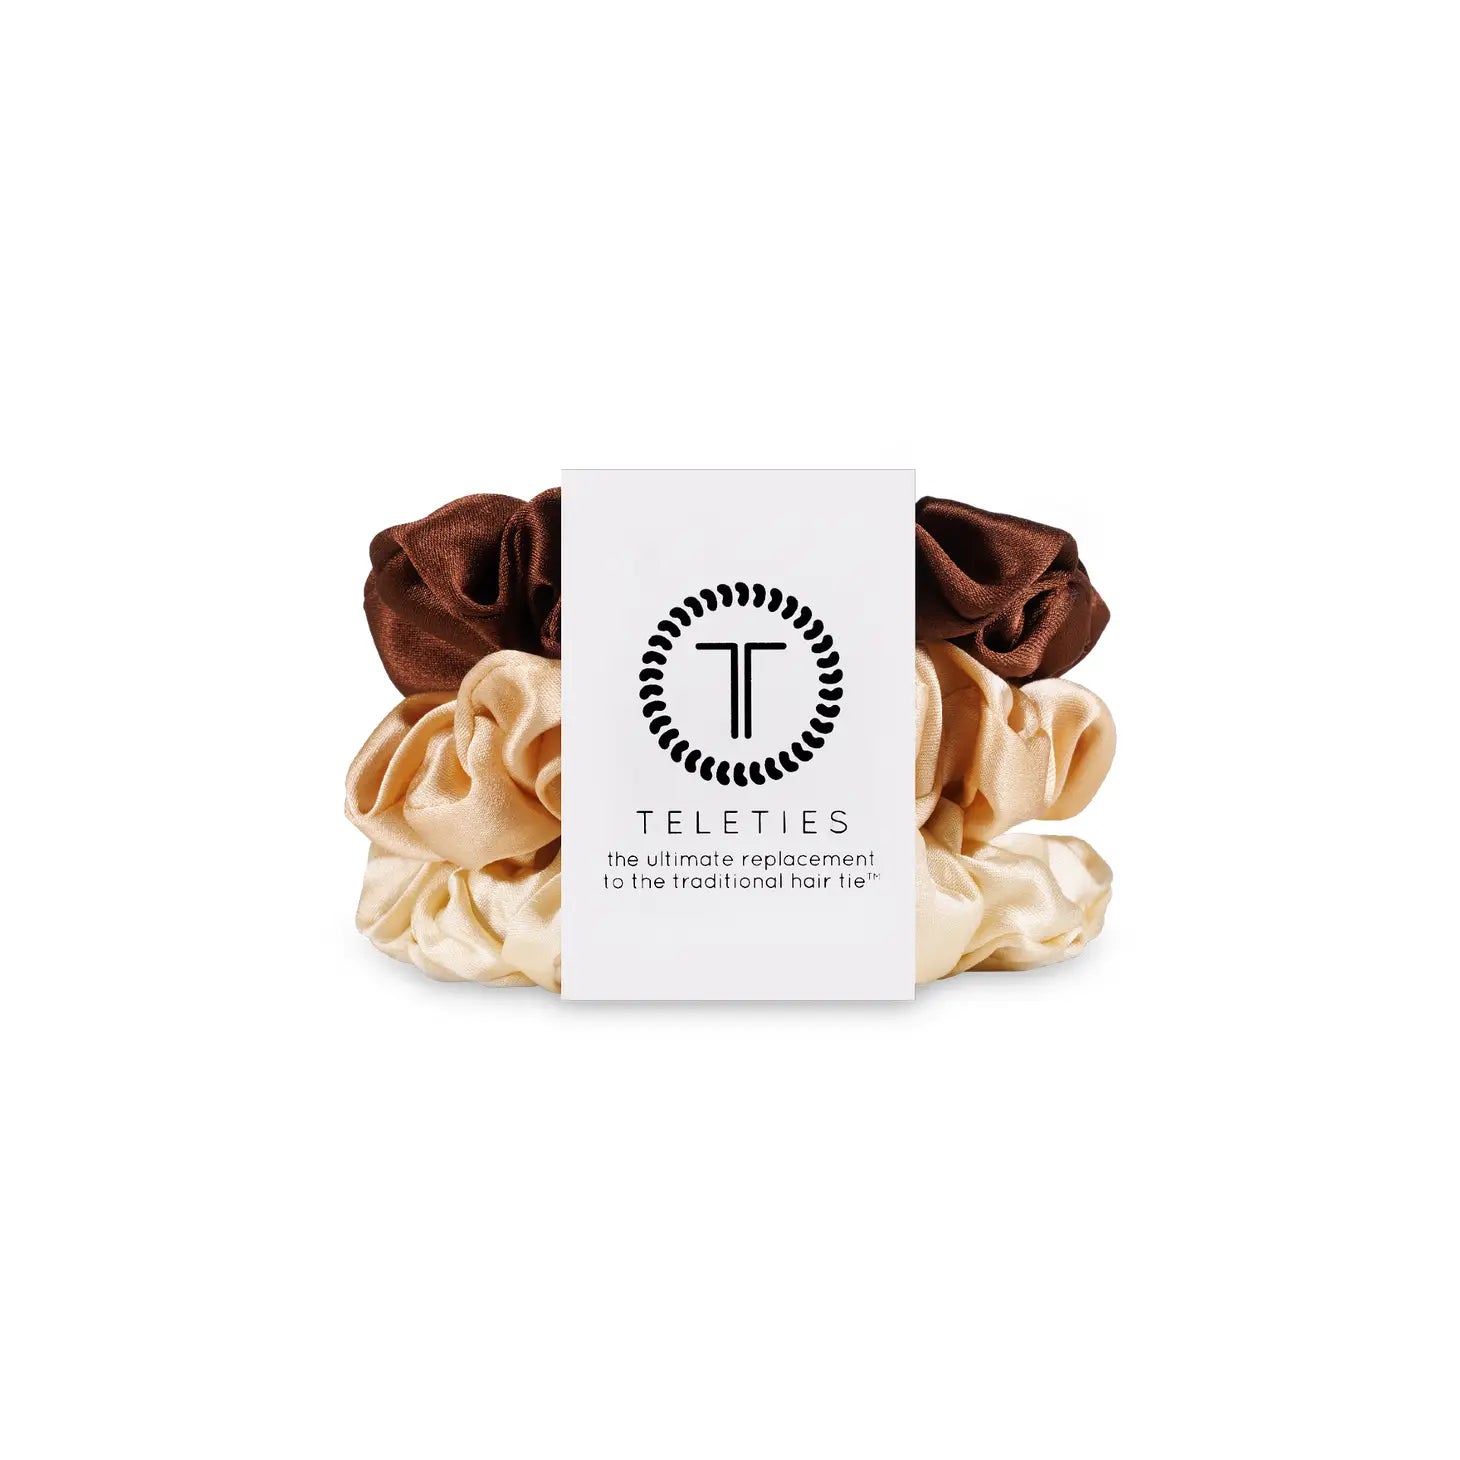 Teleties Silk Scrunchies Pack of 3 100% Pure Silk Brown, Tan, Cream Colors